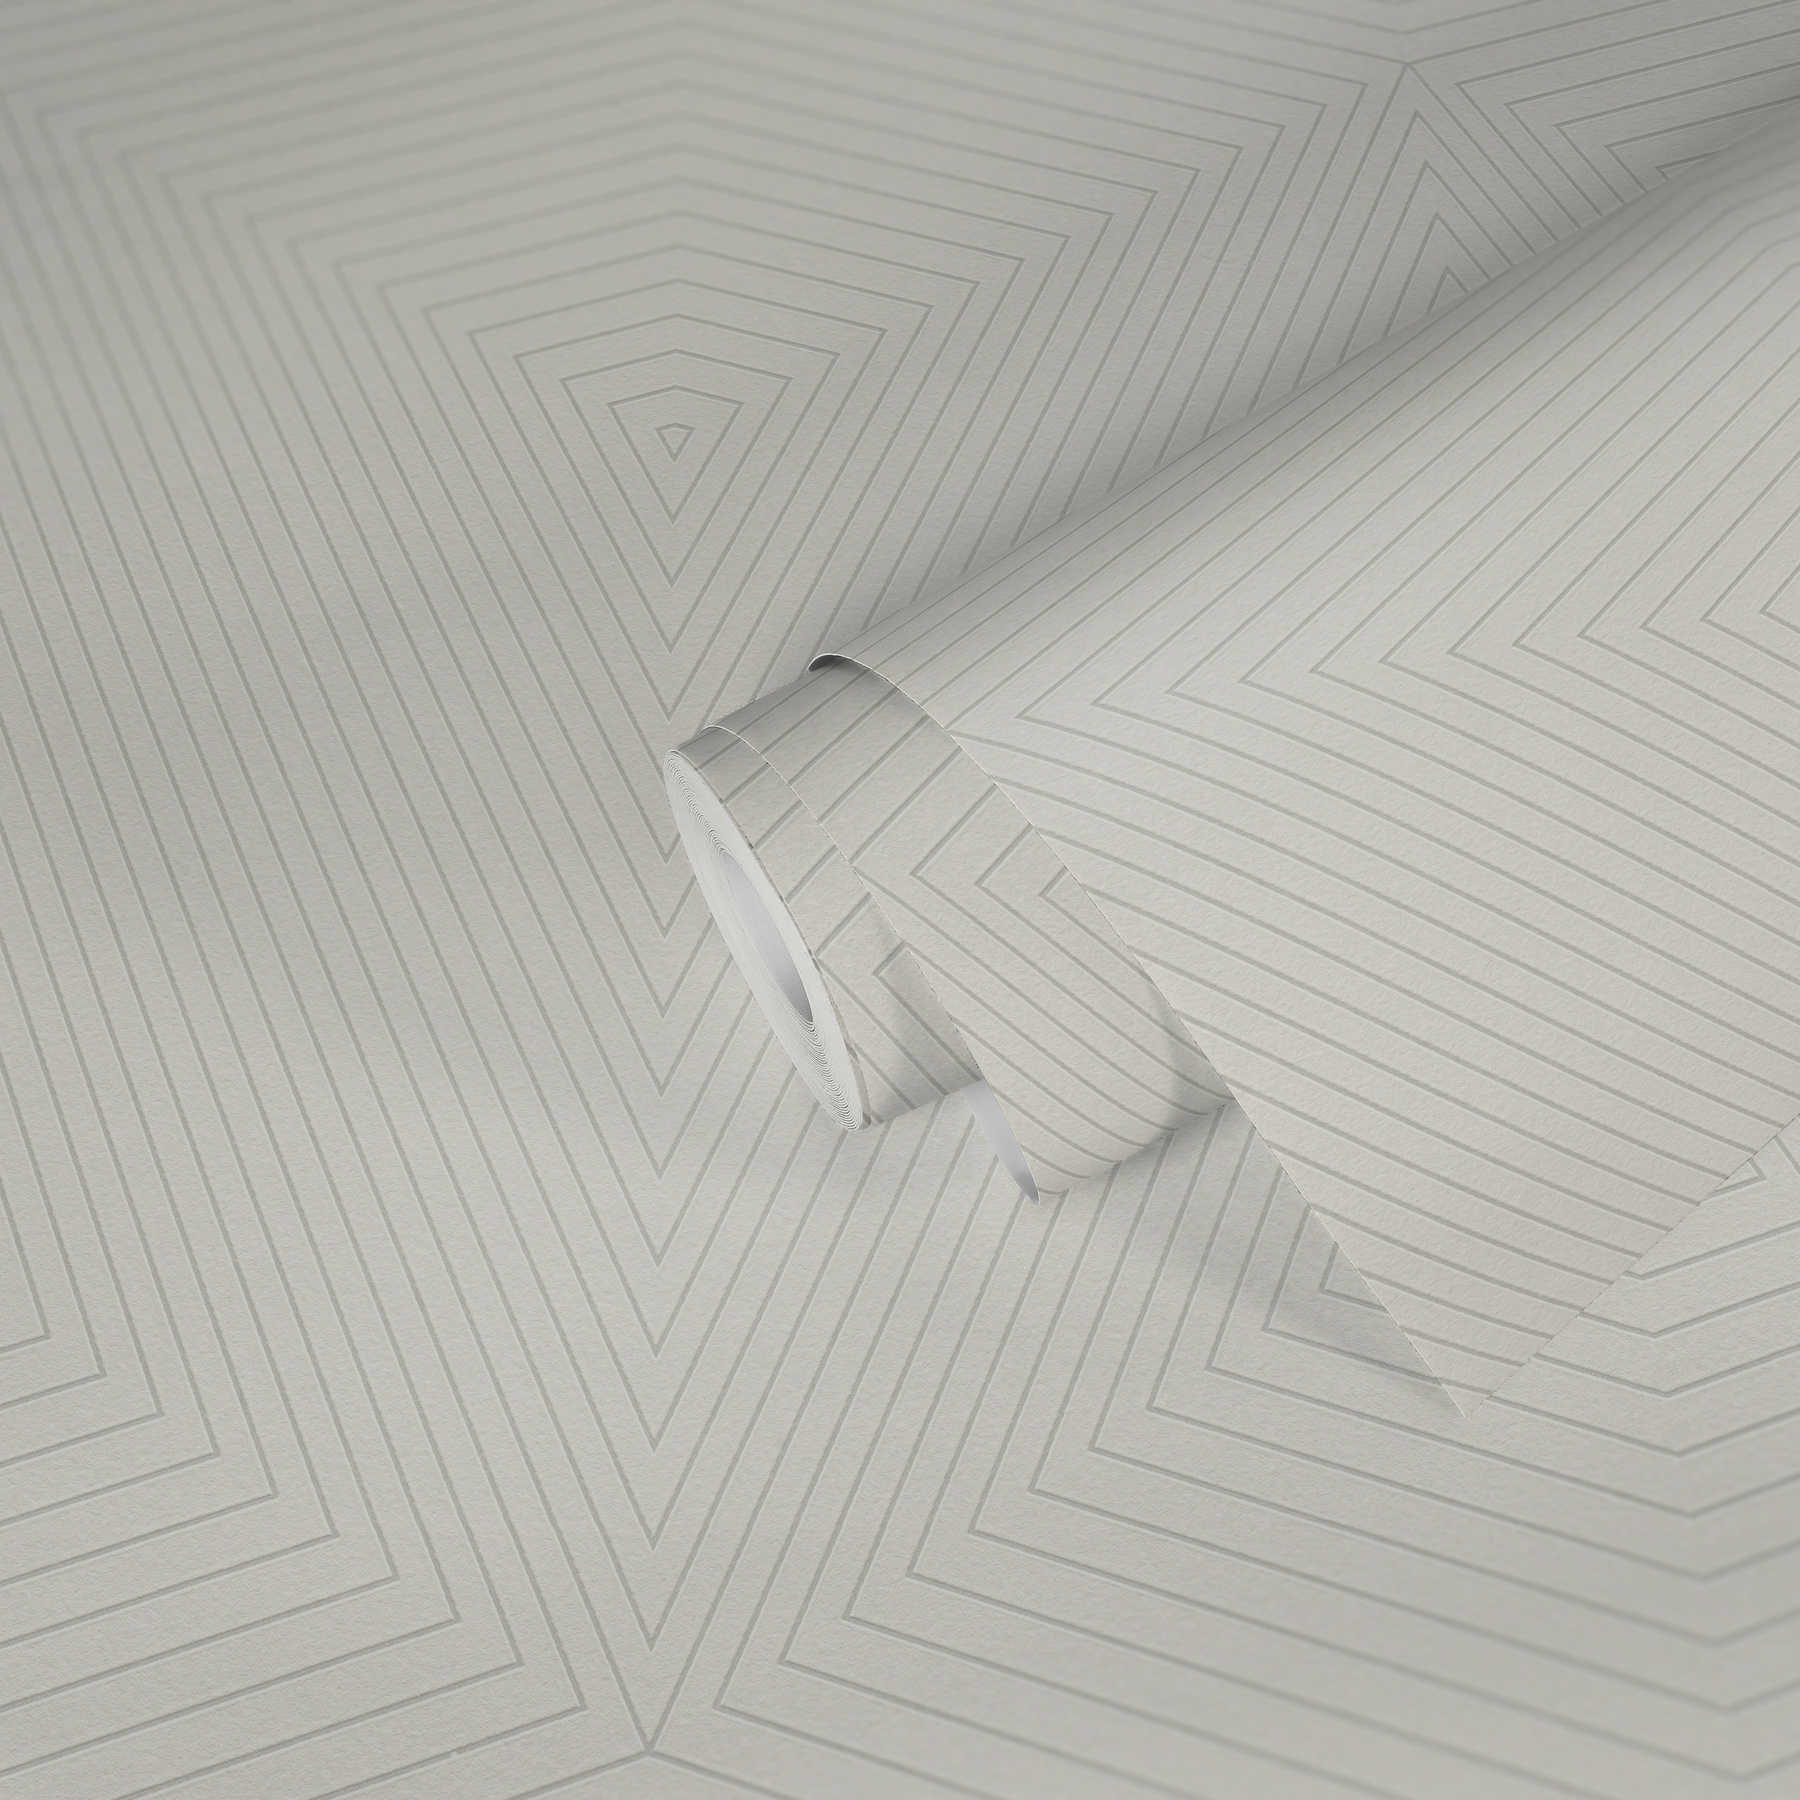             Papel pintado no tejido con diseño de líneas, diamantes y efecto metálico - crema, blanco
        